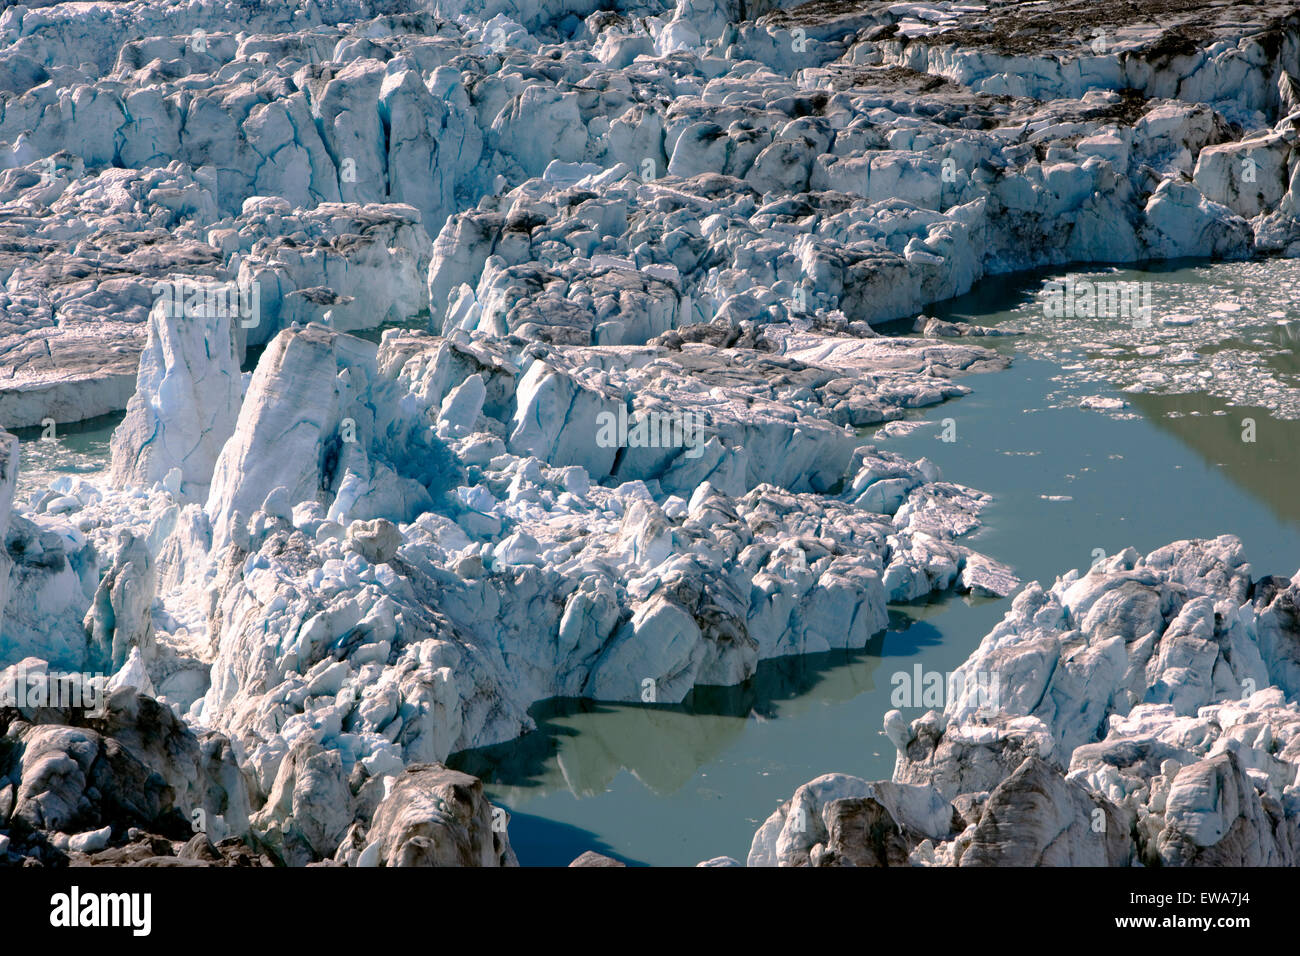 Melting Ice and lake of Salmon Glacier, Northwestern British Columbia,Canada Stock Photo